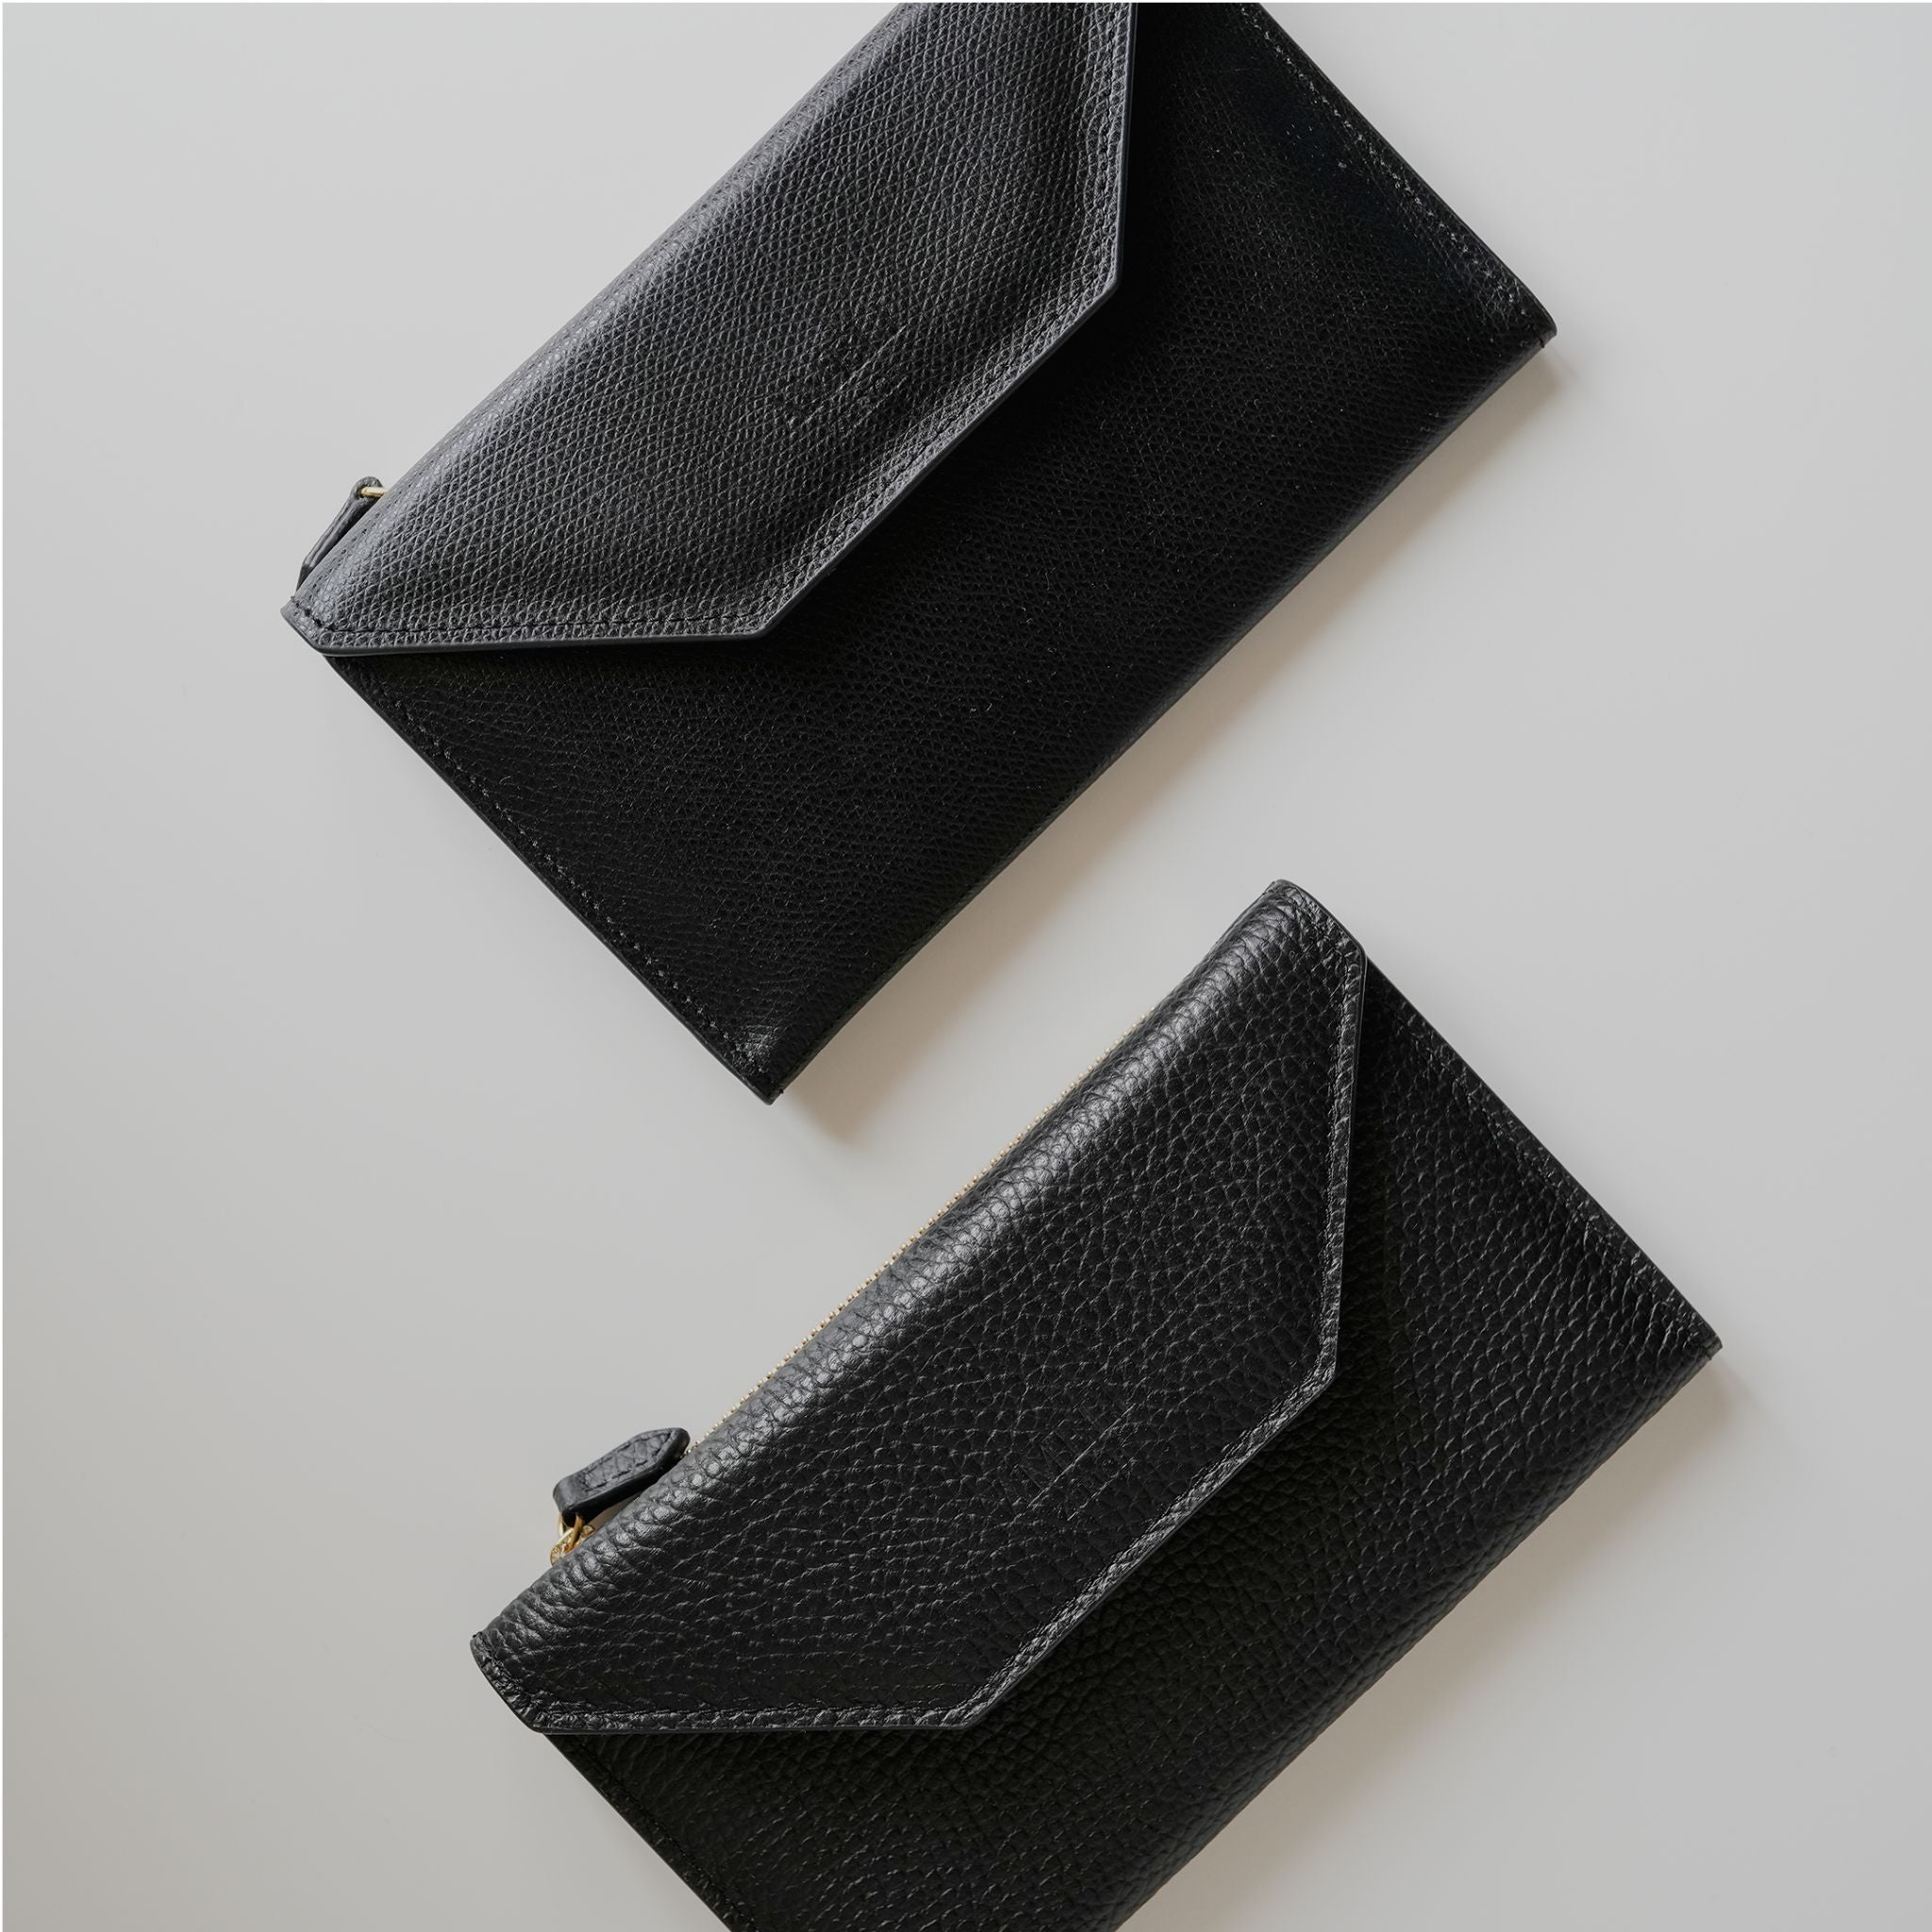 AMELI Zurich | Wallet | Black | Soft Grain Leather | Comparison